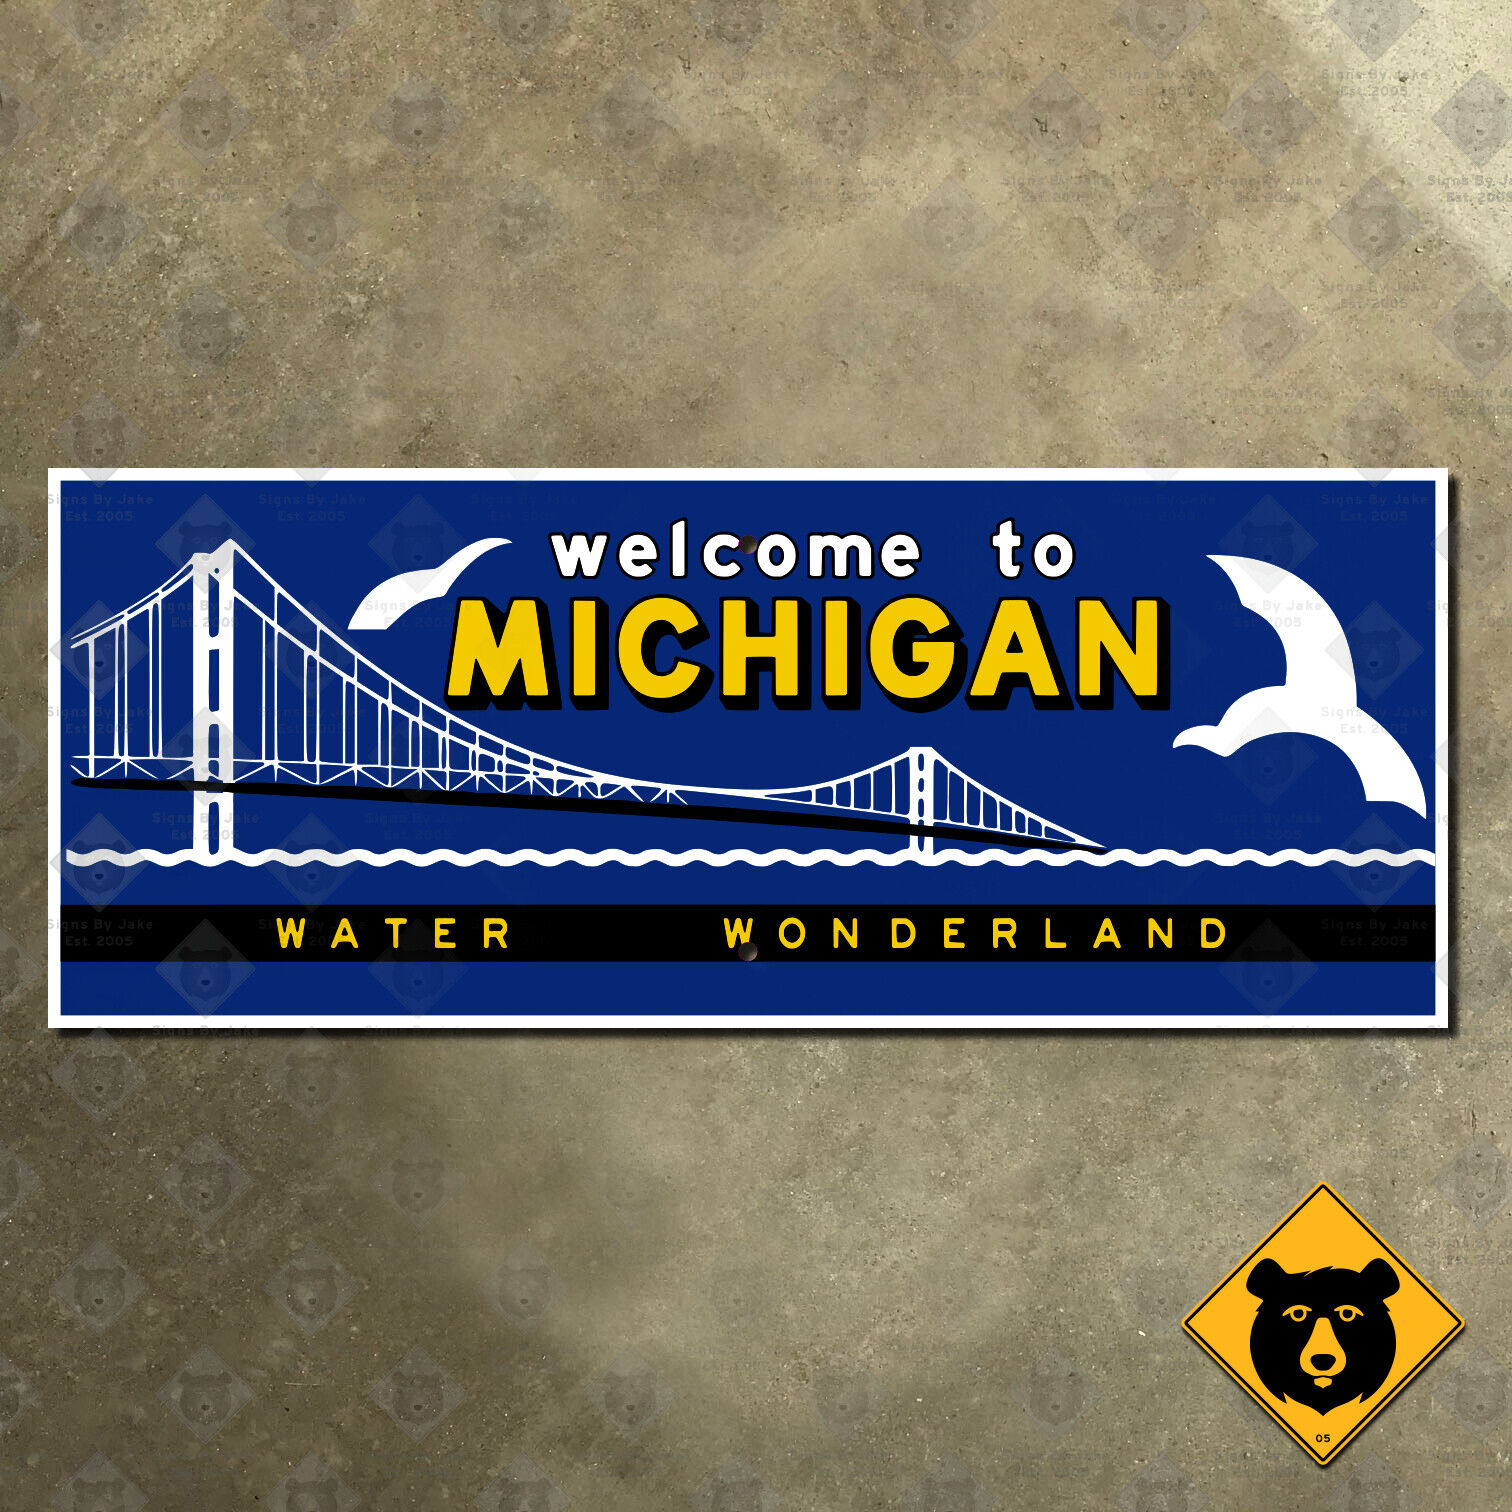 Michigan state line highway marker road sign 1957 water wonderland 17x7